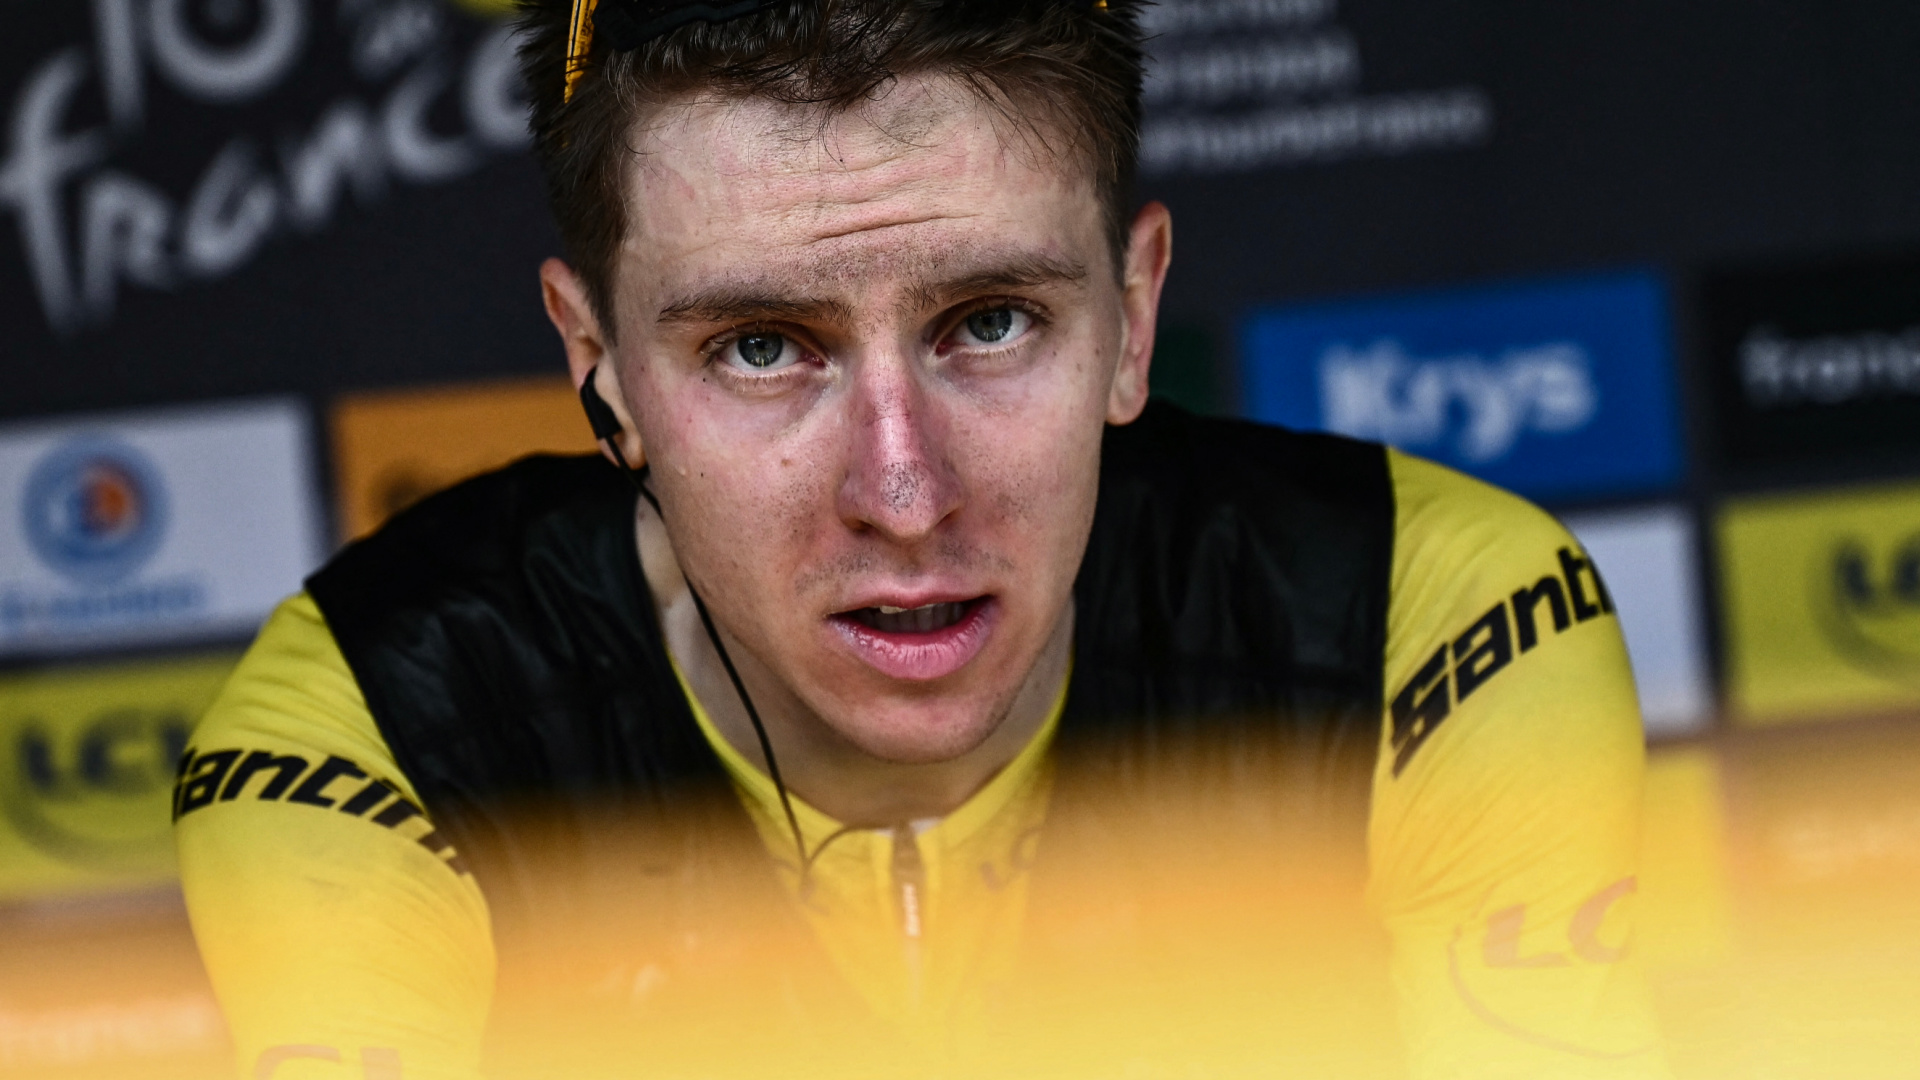 Escándalo en el Tour de Francia: Pogačar responde